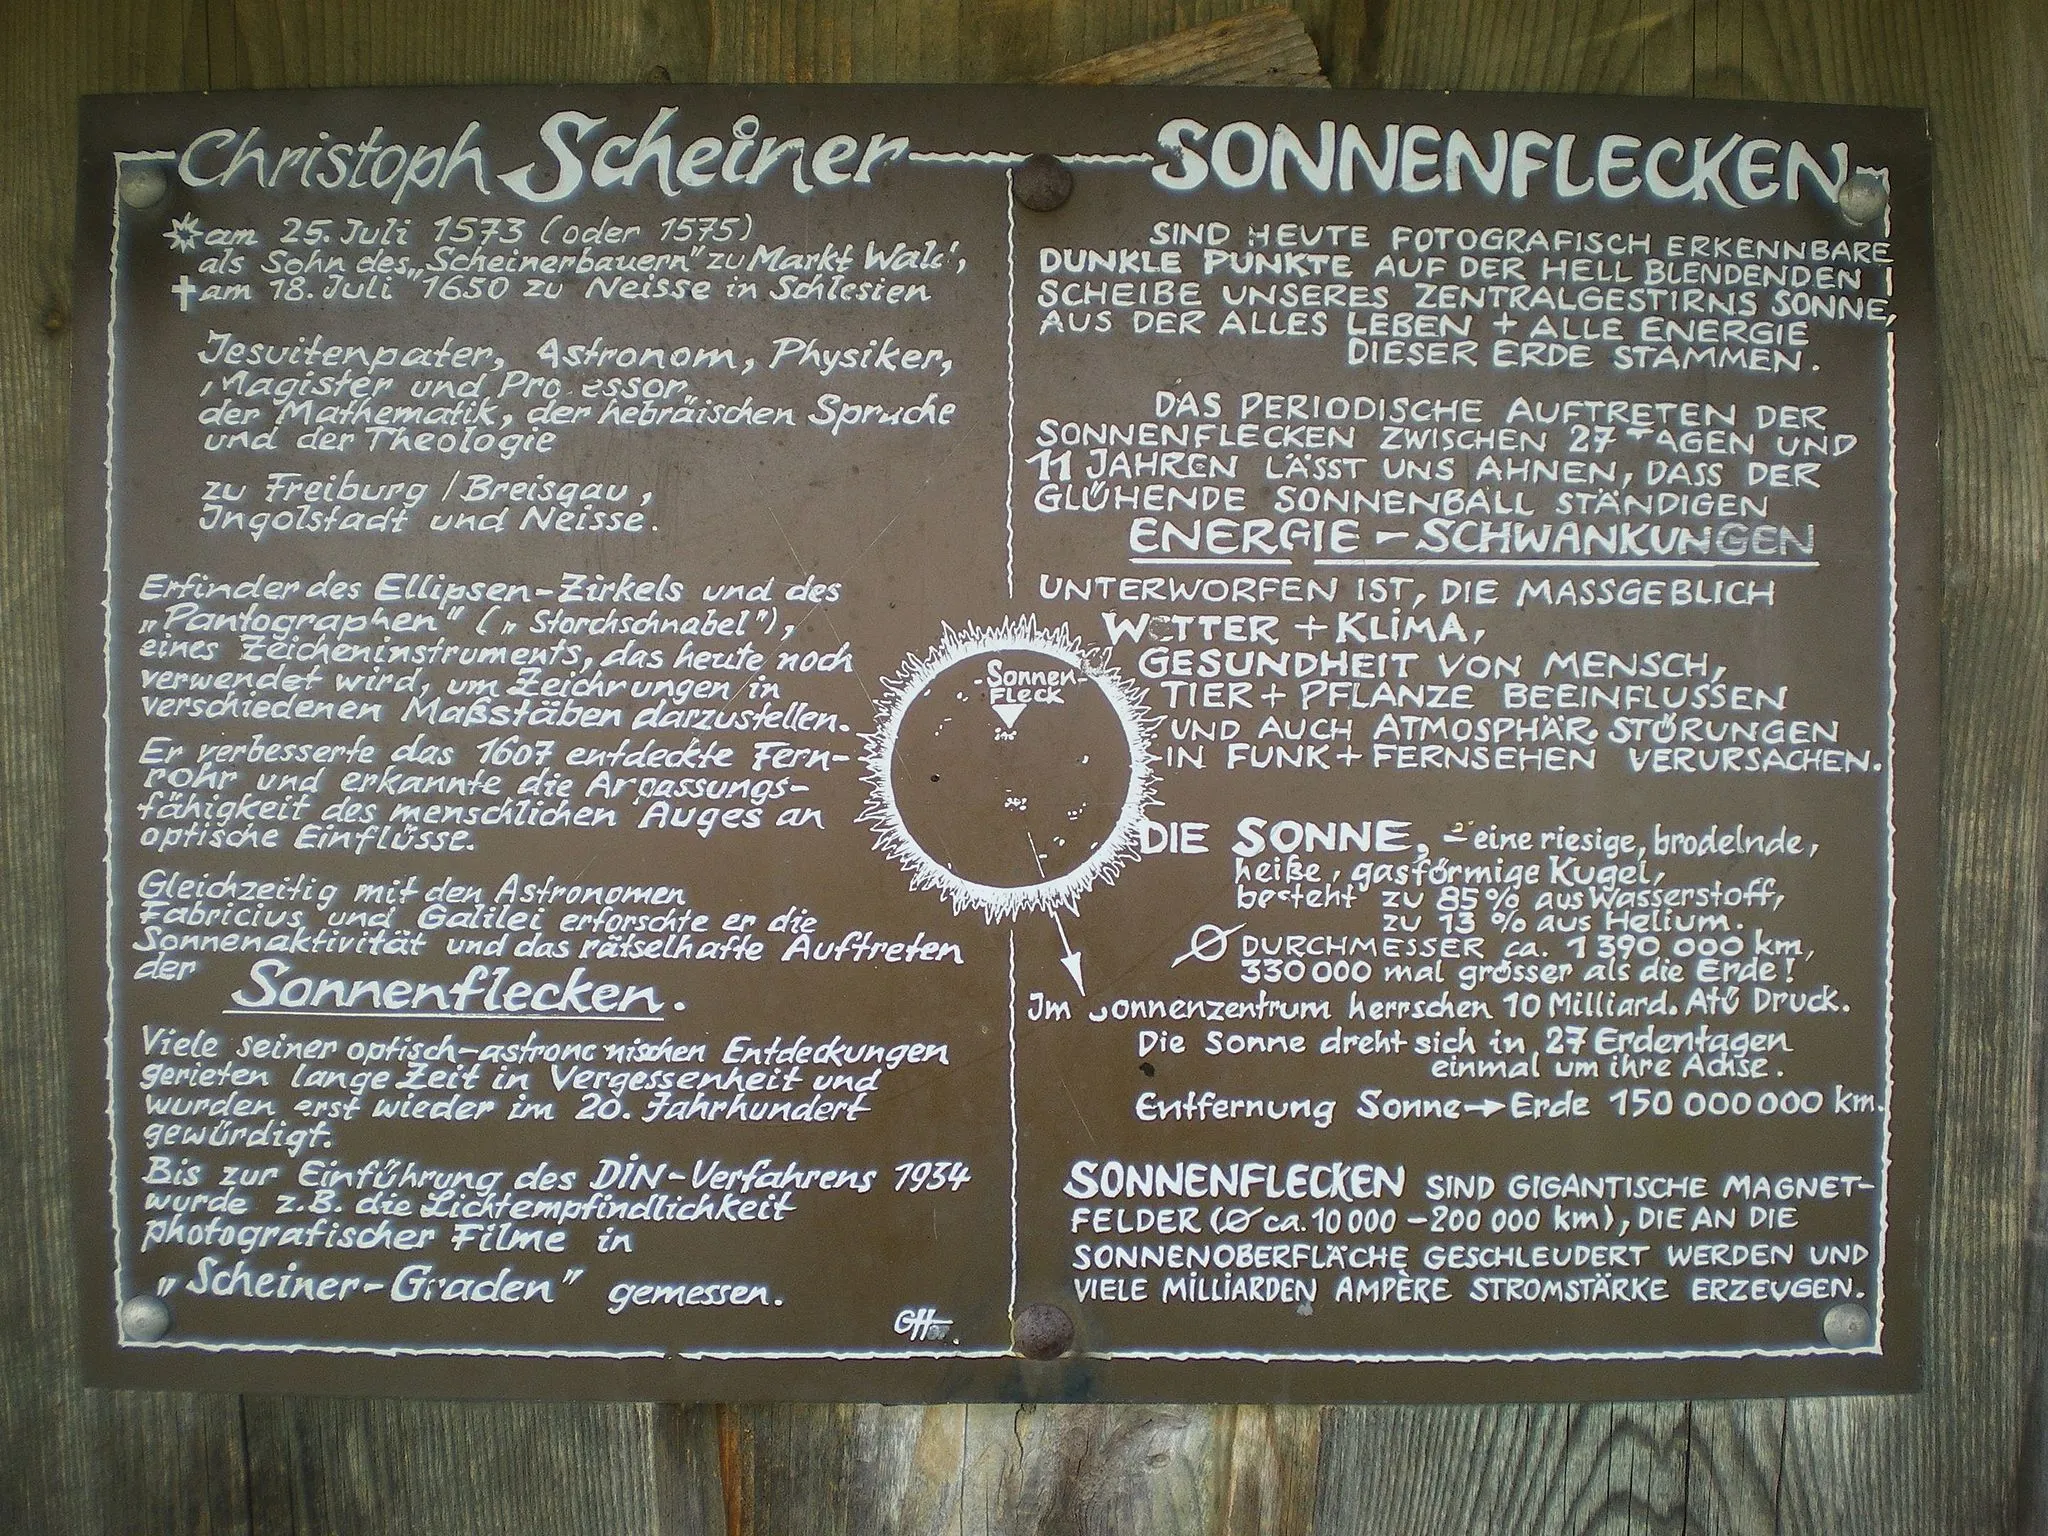 Photo showing: Hier sieht man eine Tafel mit Inforamtionen von Christoph Scheiner; diese befindet sich an dem Christoph-Scheiner-Turm.